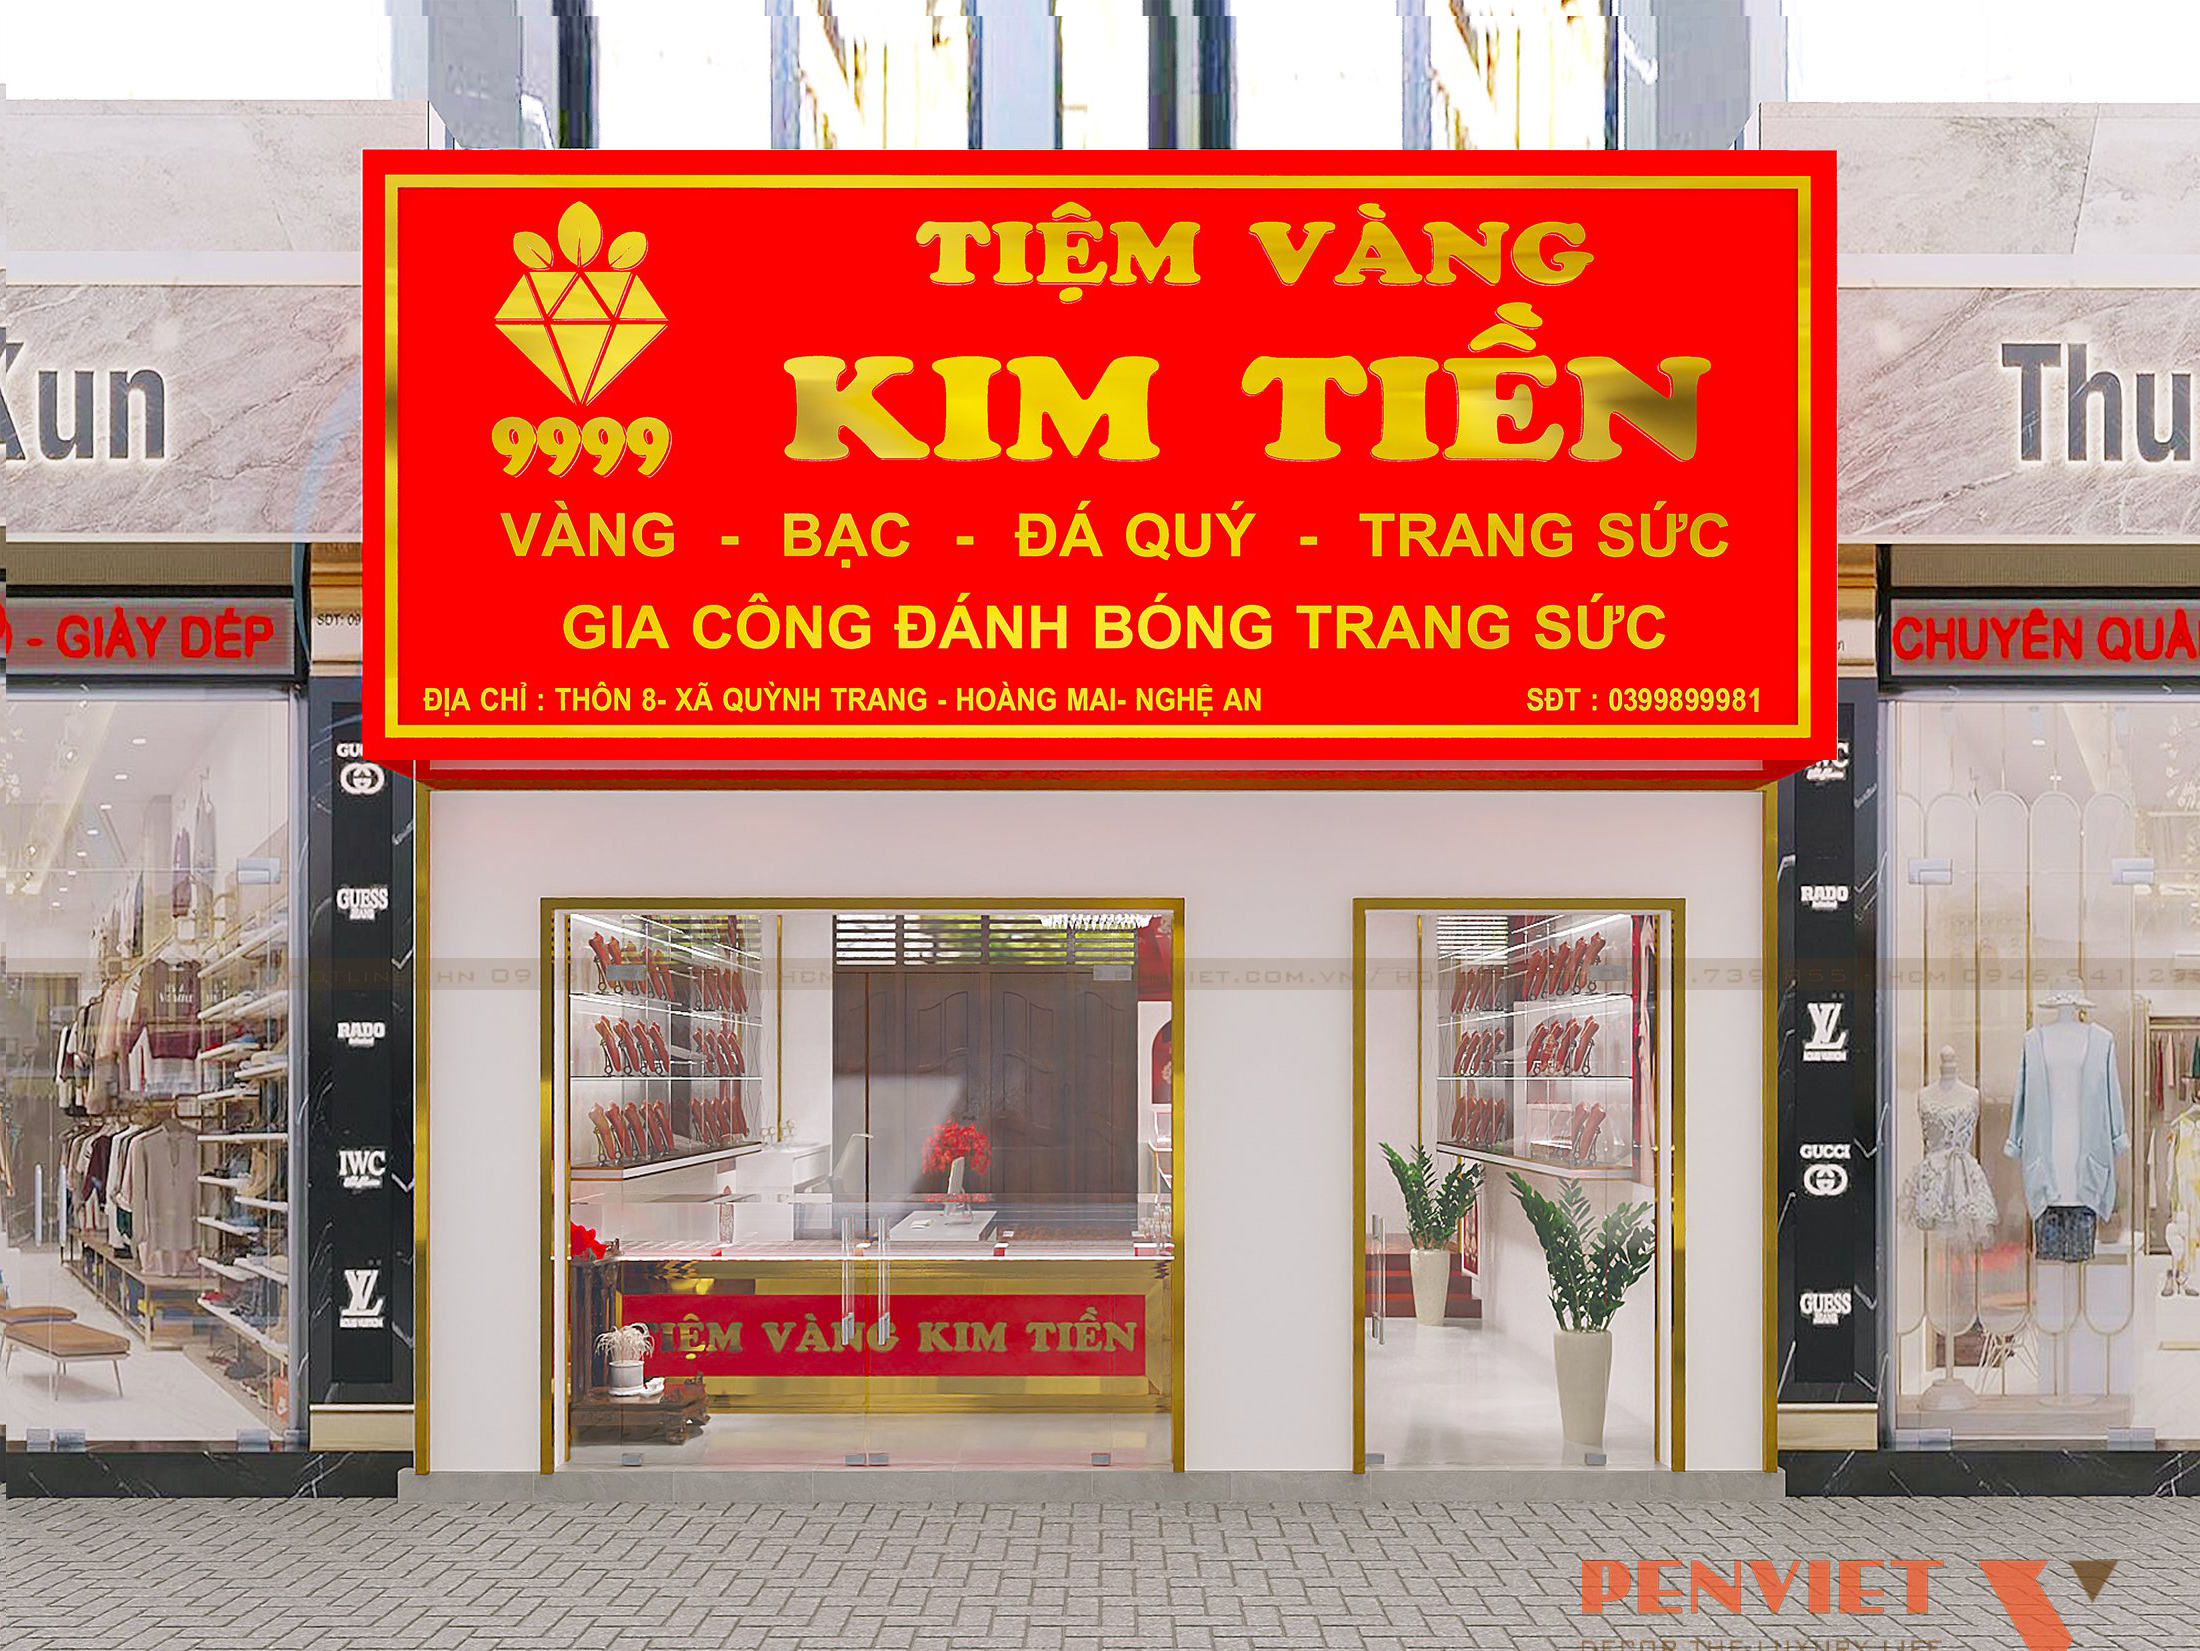 Phương án thiết kế nội thất tiệm vàng Kim Tiền tại Nghệ An có gì mới lạ?